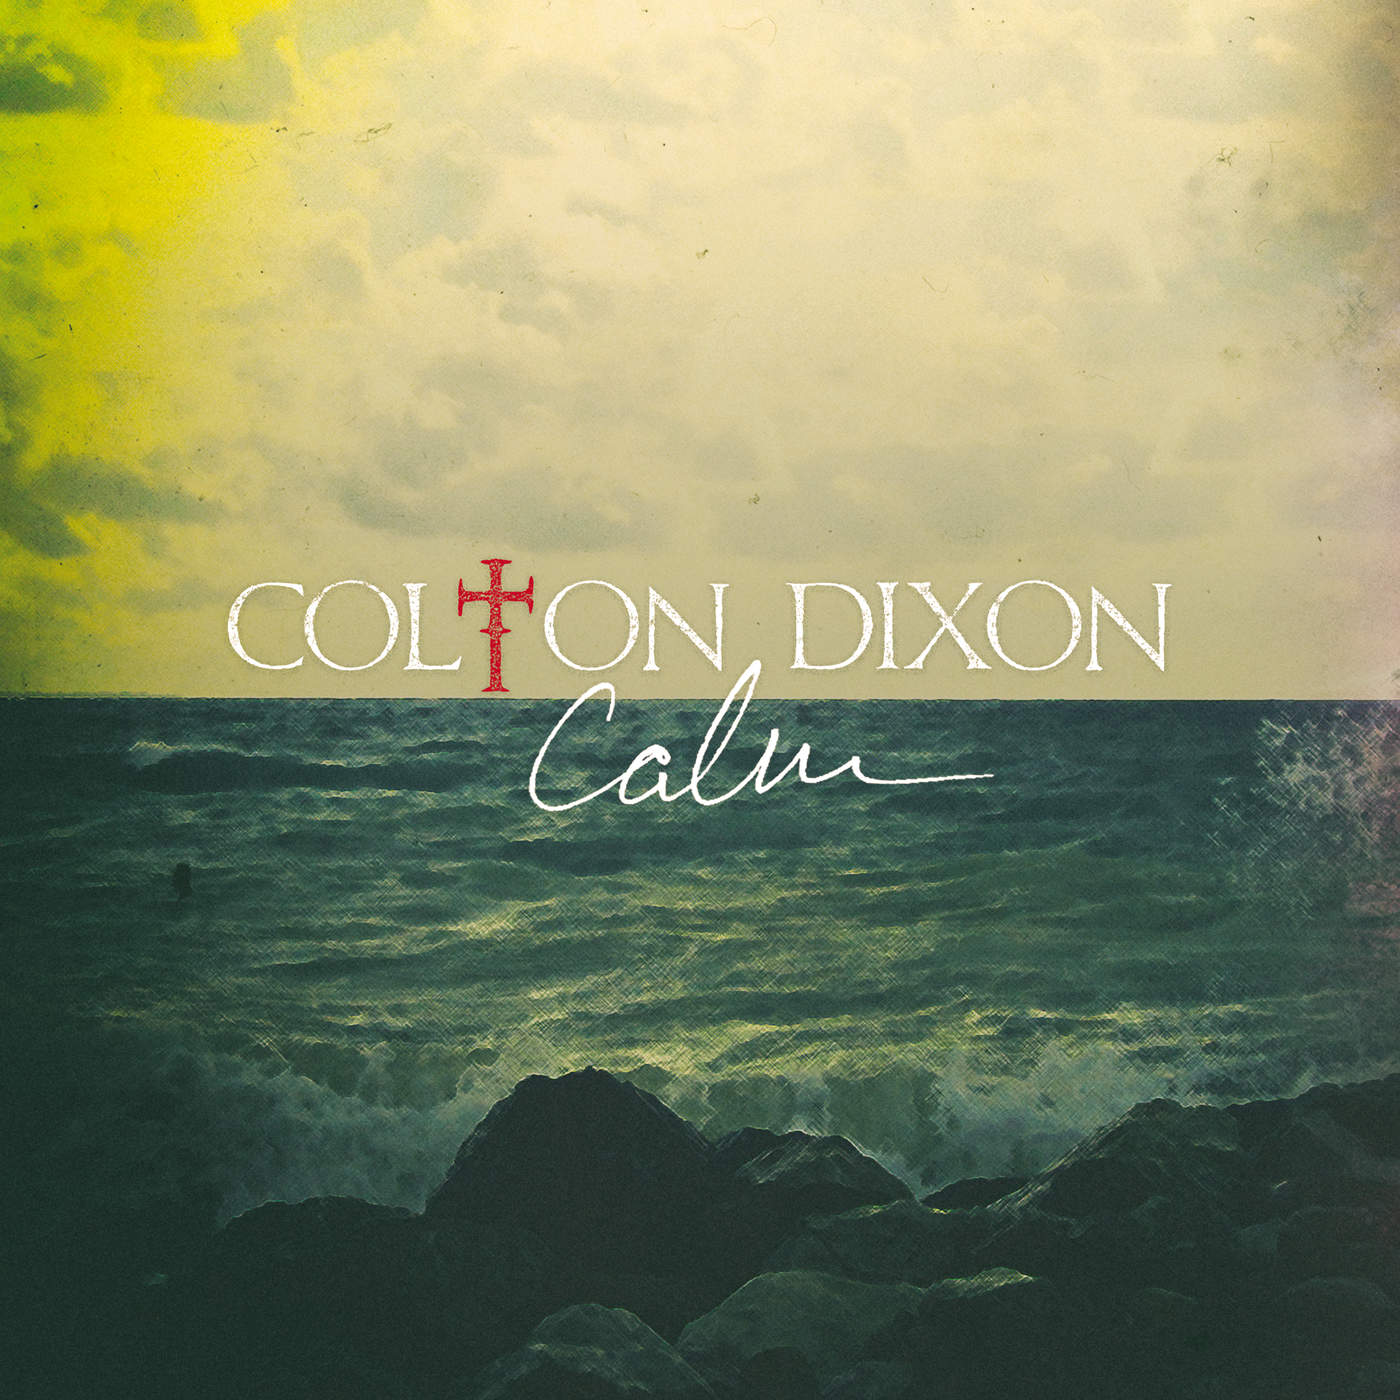 Colton Dixon - Calm (2015) Album Info